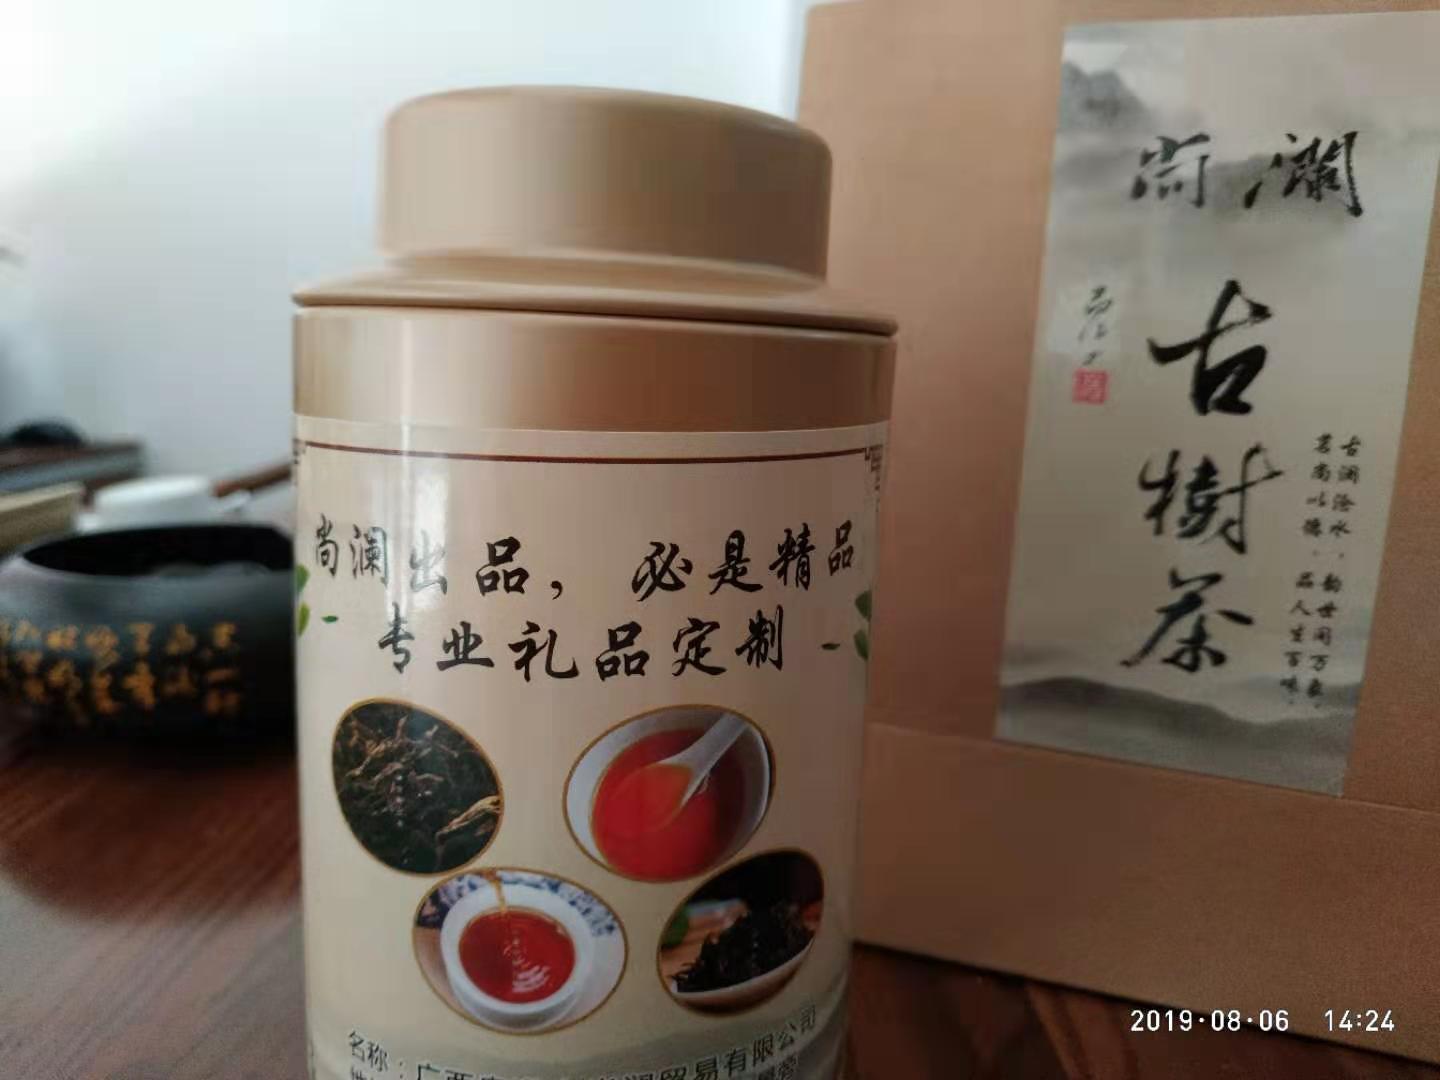 尚澜礼品红茶古树红茶 尚澜商务礼品红茶古树红茶